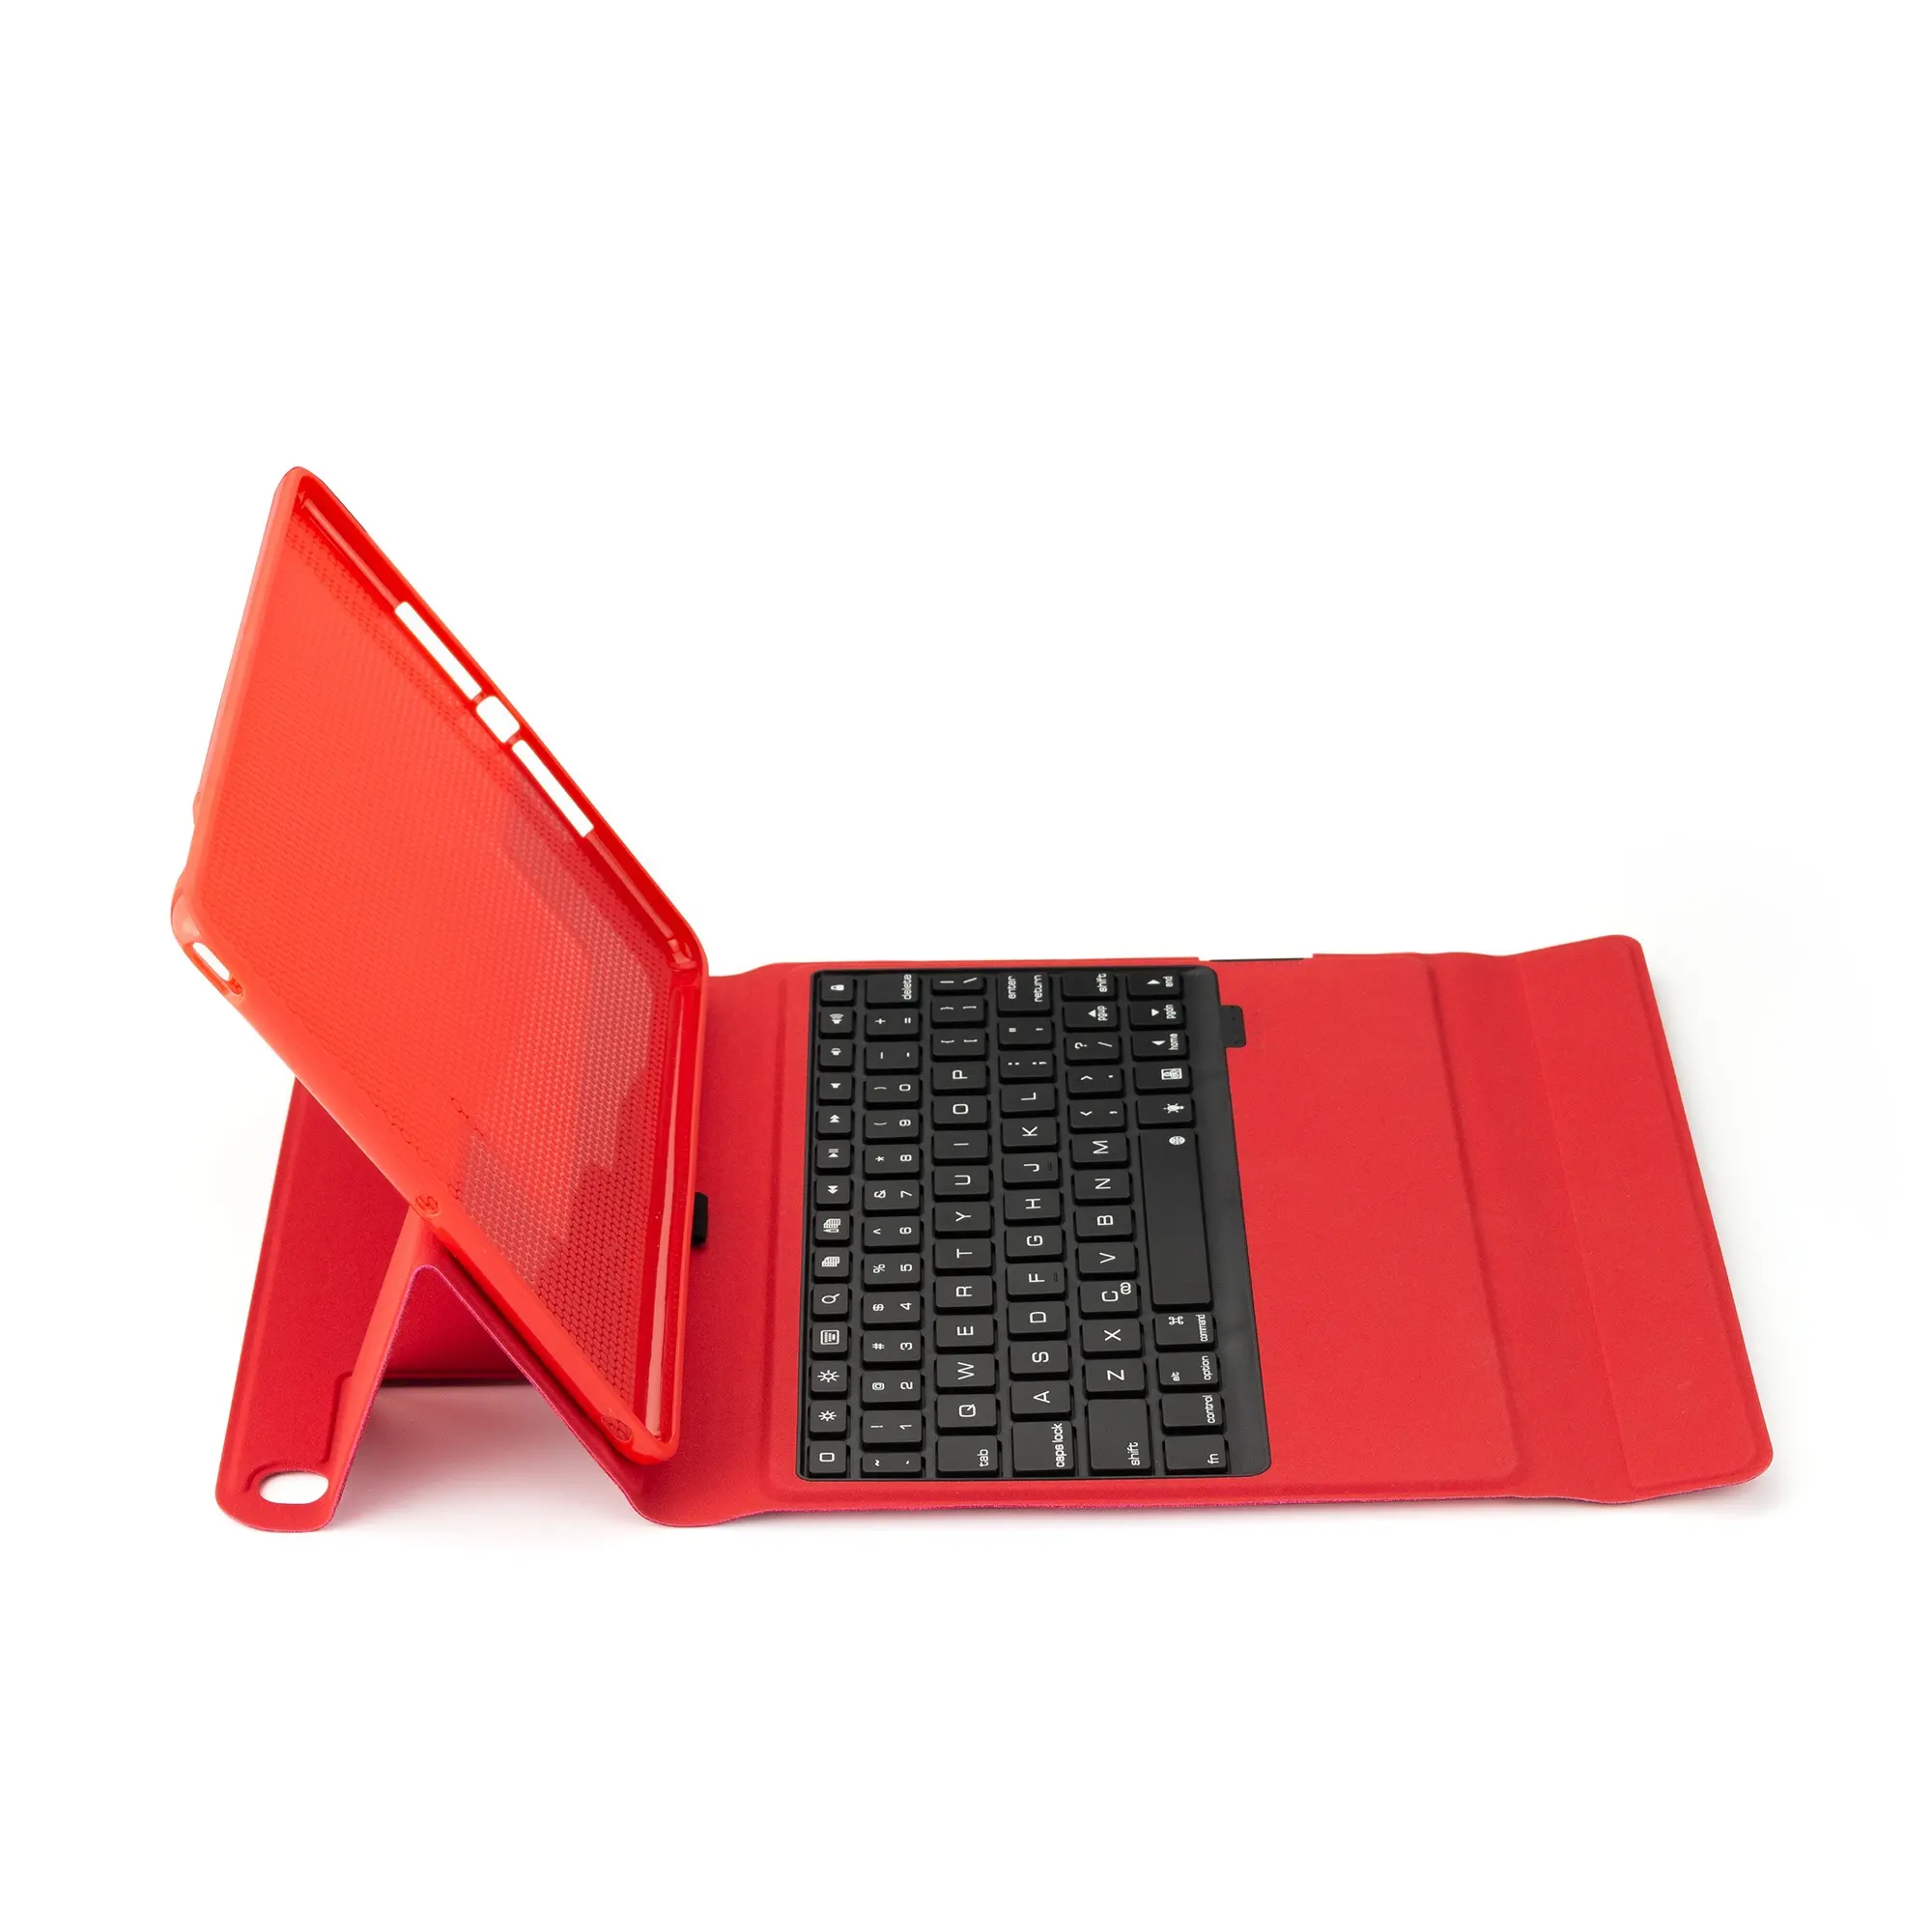 PU кожаный чехол-подставка клавиатура с подсветкой Беспроводная клавиатура чехол для iPad Air 1/2 iPad 1 до 6 Gen 9,7 дюймов